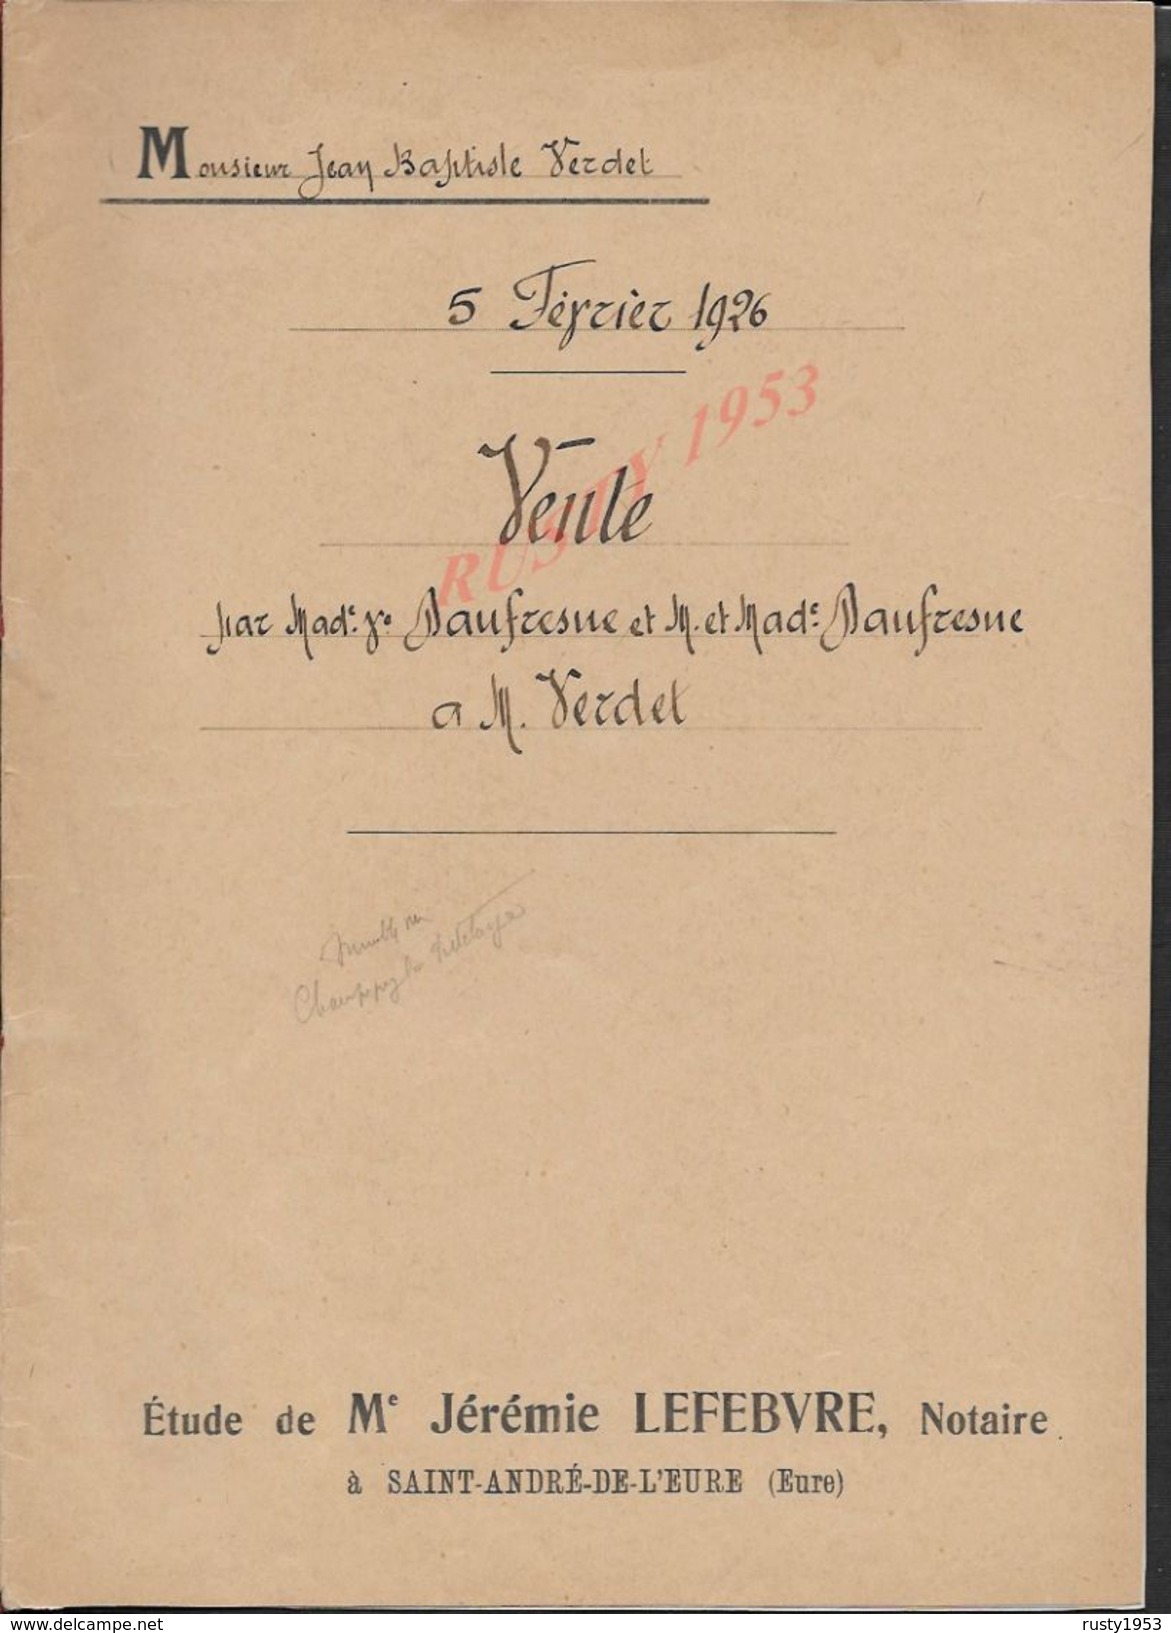 CHAMPIGNY LA FUTELAYE 1926 ACTE DE TERRES ENTRE MR DAUFRESNE À VERDET 5 PAGES : - Manuscripts